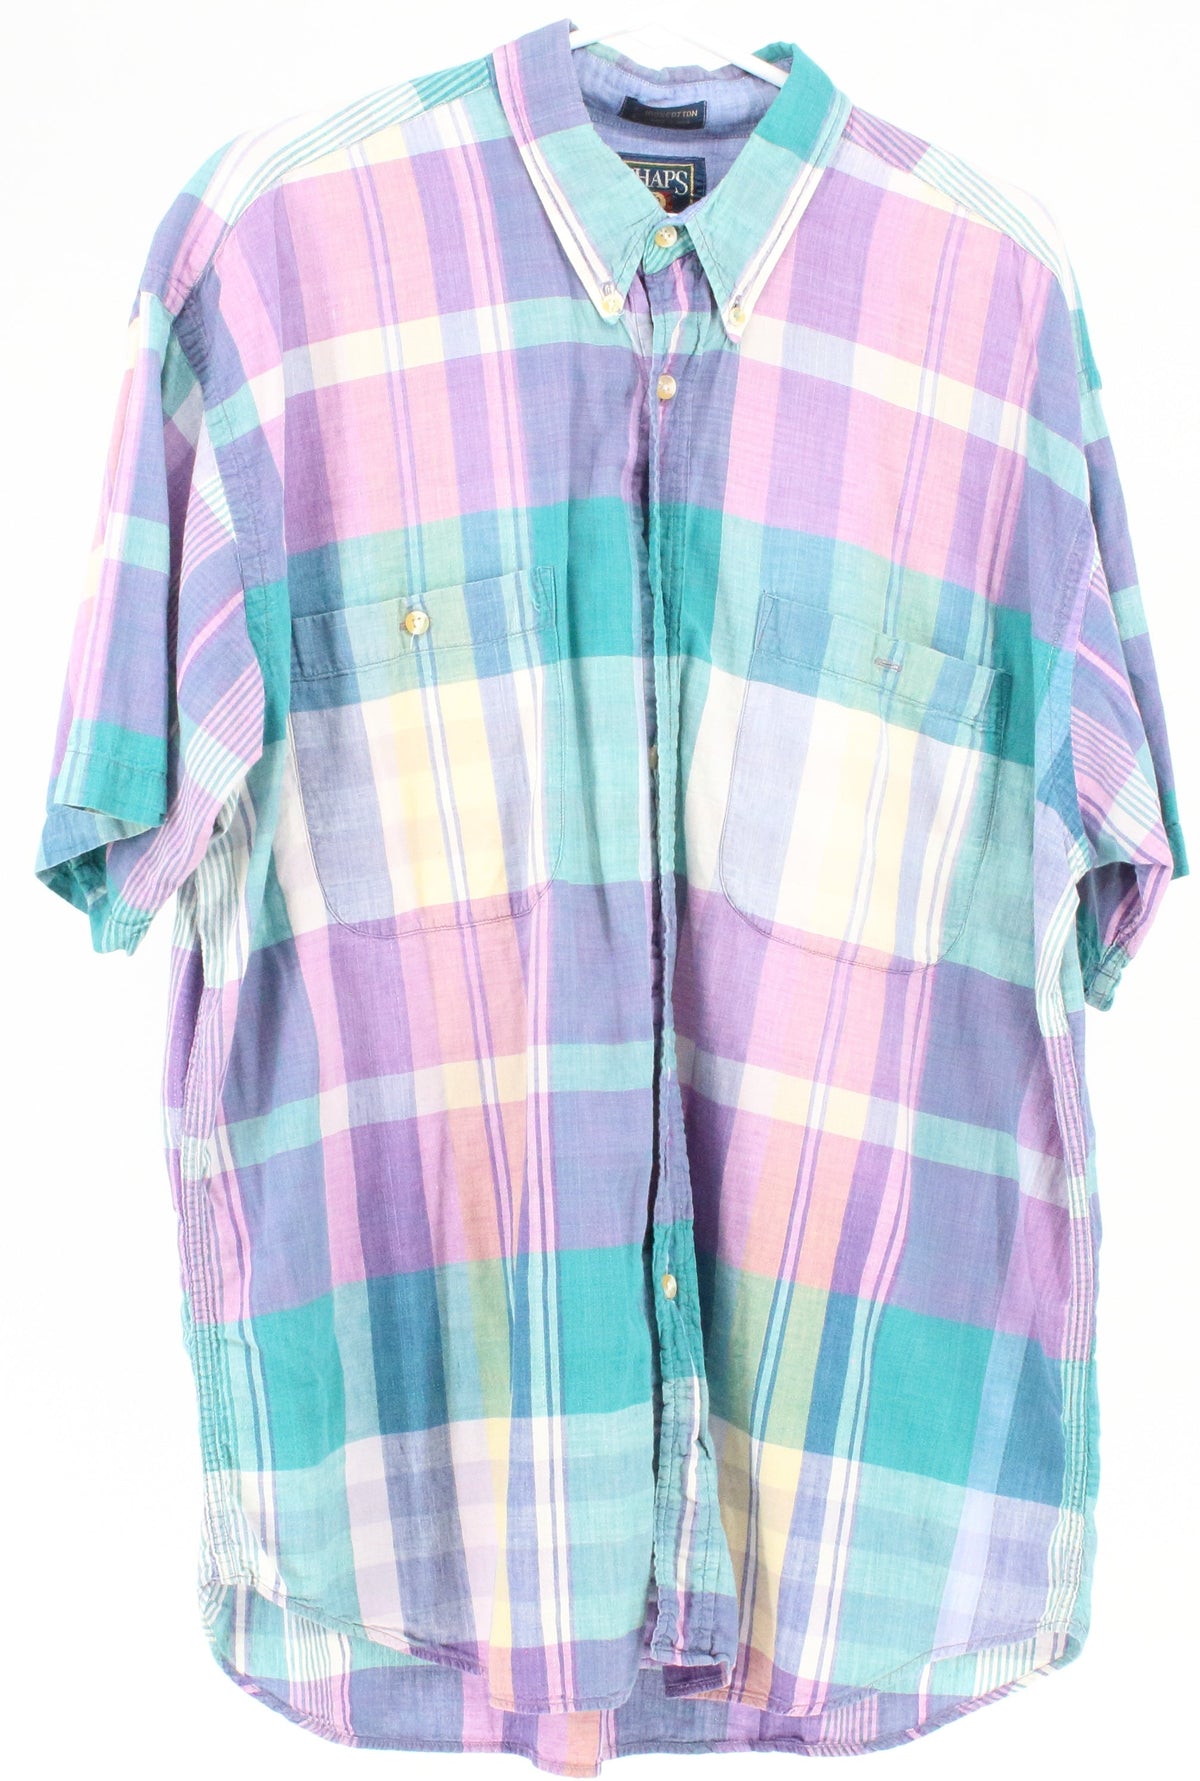 Ralph Lauren Chaps Purple Check Print Button-Up Short Sleeve Shirt